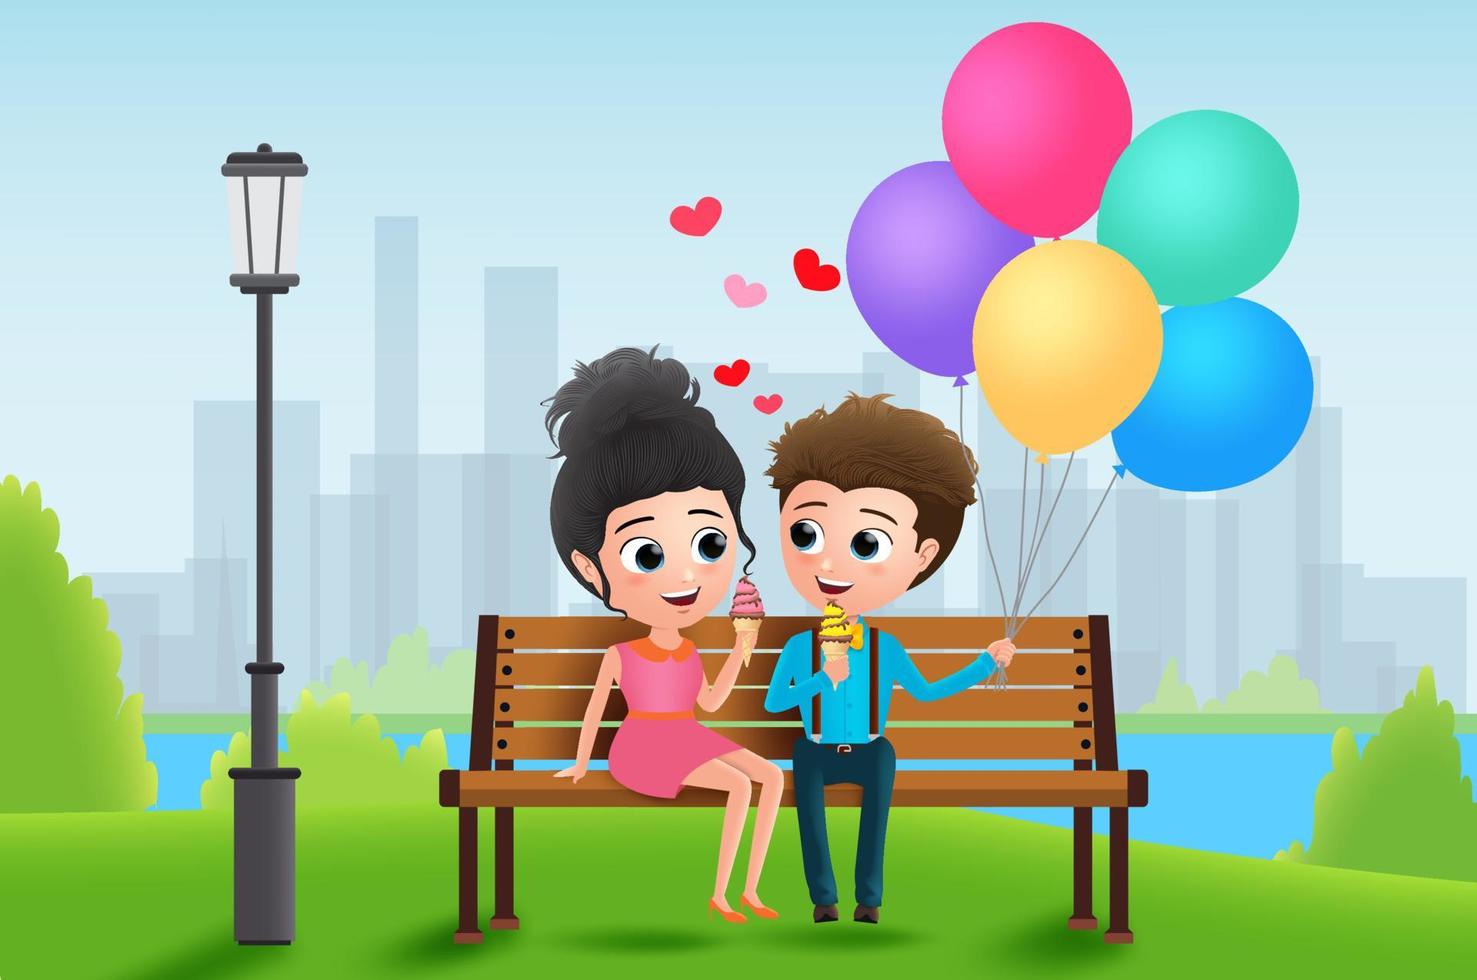 disegno di sfondo vettoriale di datazione del carattere di san valentino. personaggi di coppia di San Valentino seduti e mangiare il gelato con palloncini colorati sullo sfondo del parco. illustrazione vettoriale.